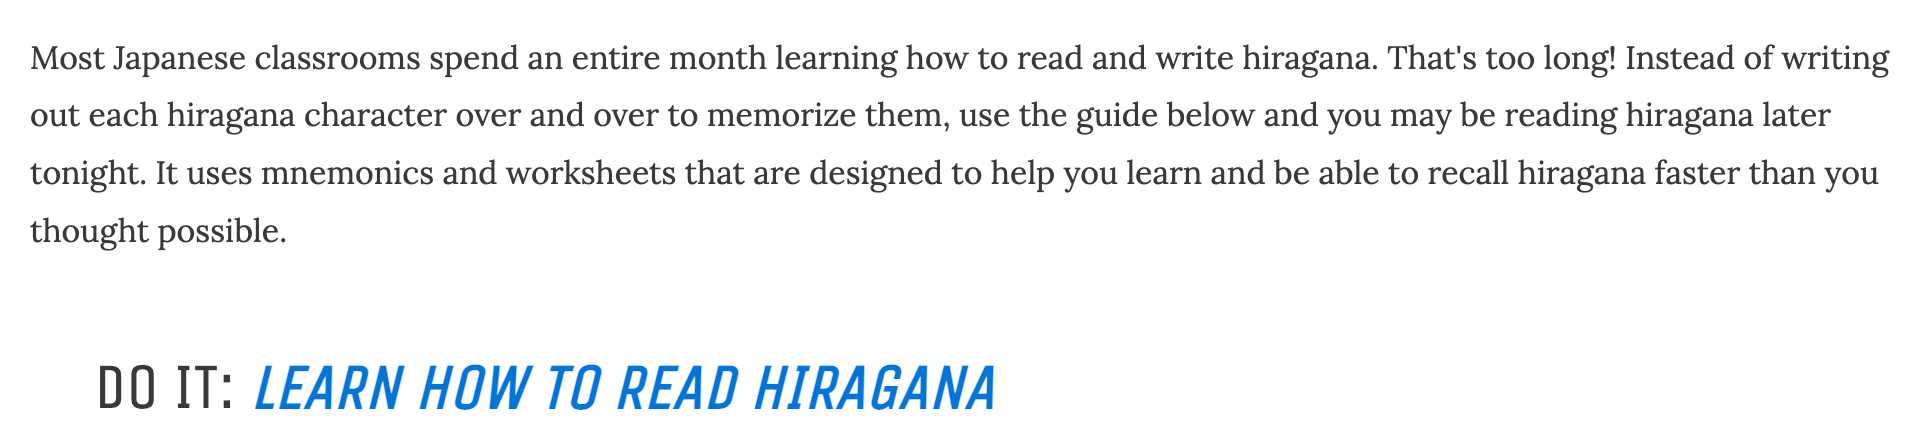 CTA incoraggia l'utente a passare al prossimo compito di imparare a leggere l'hiragana